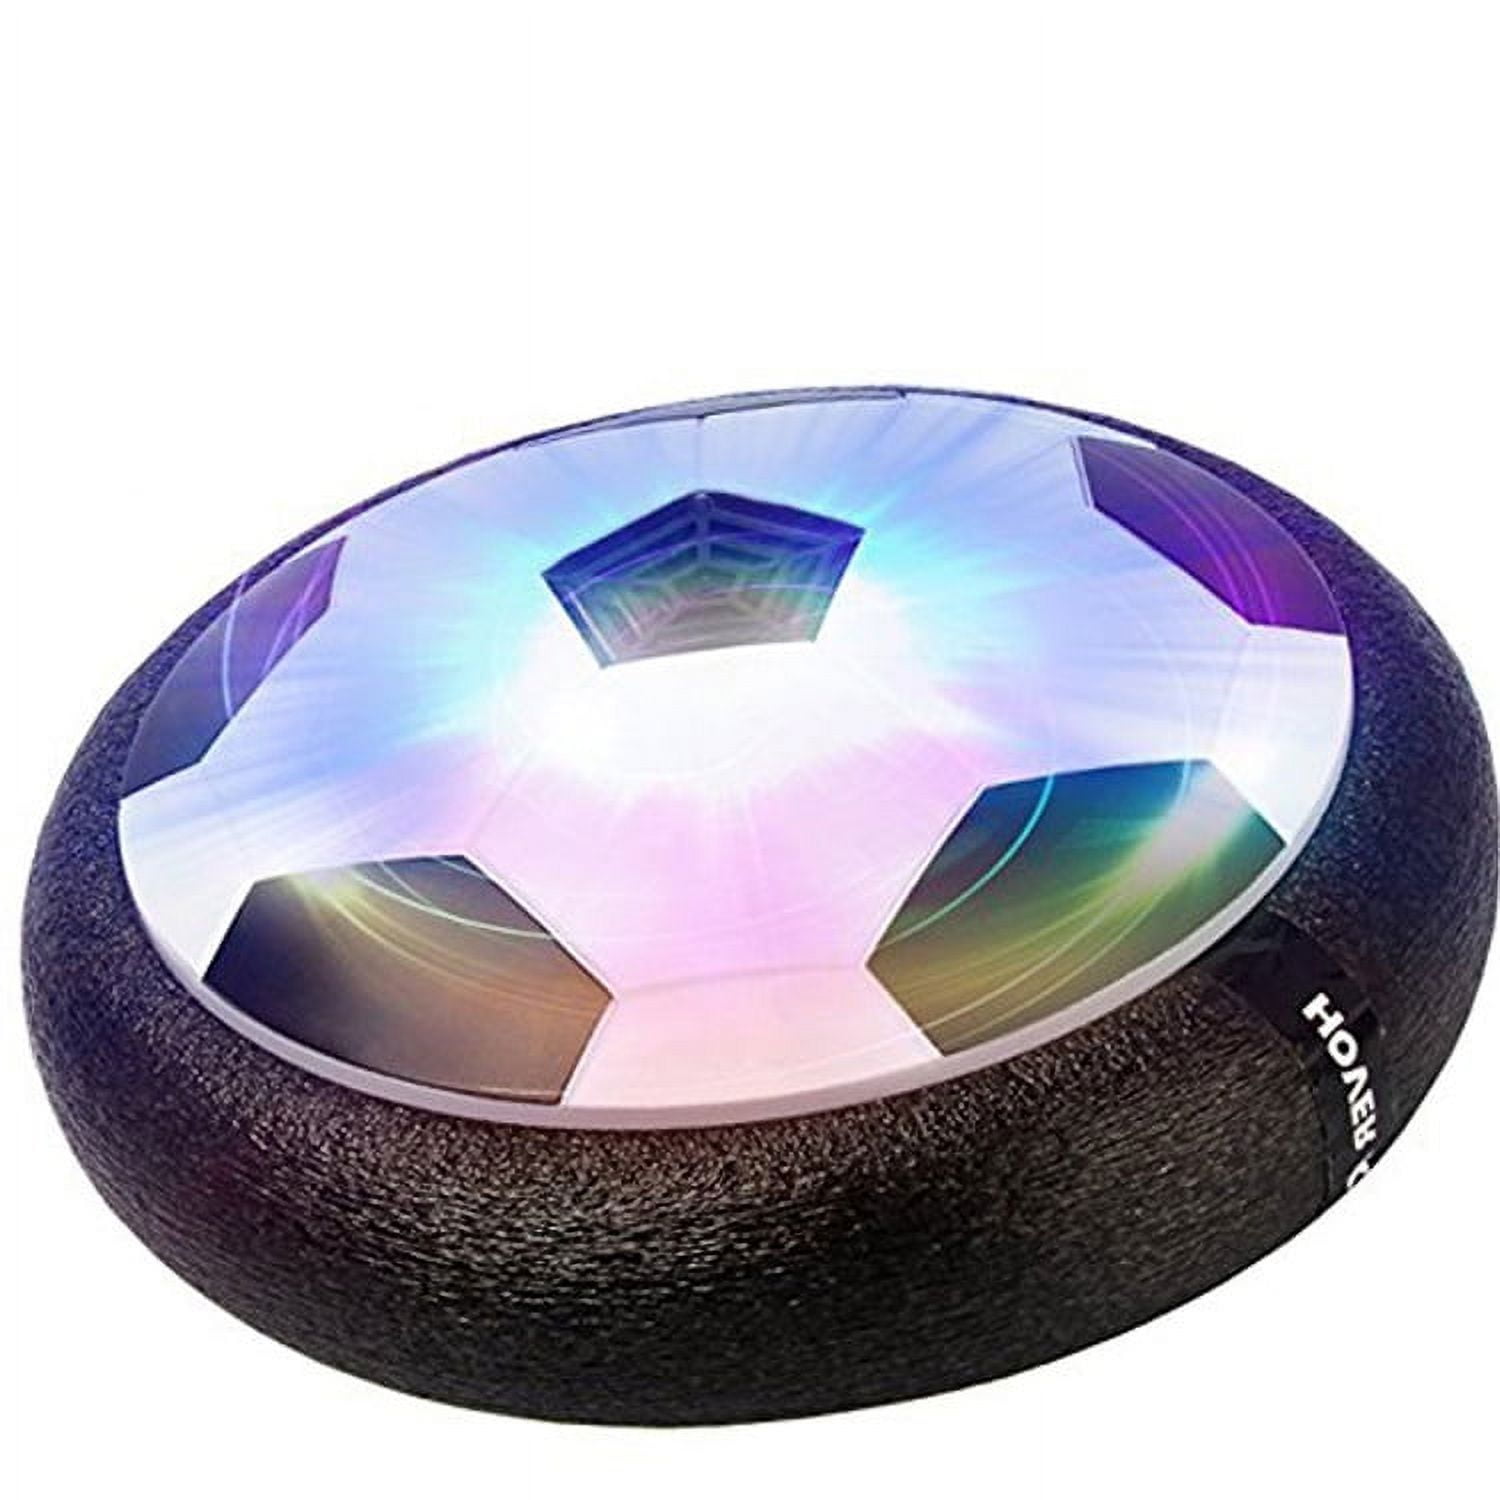 Roofei Hover Soccer Ball LED Soccer Ball Air Power Training Ball